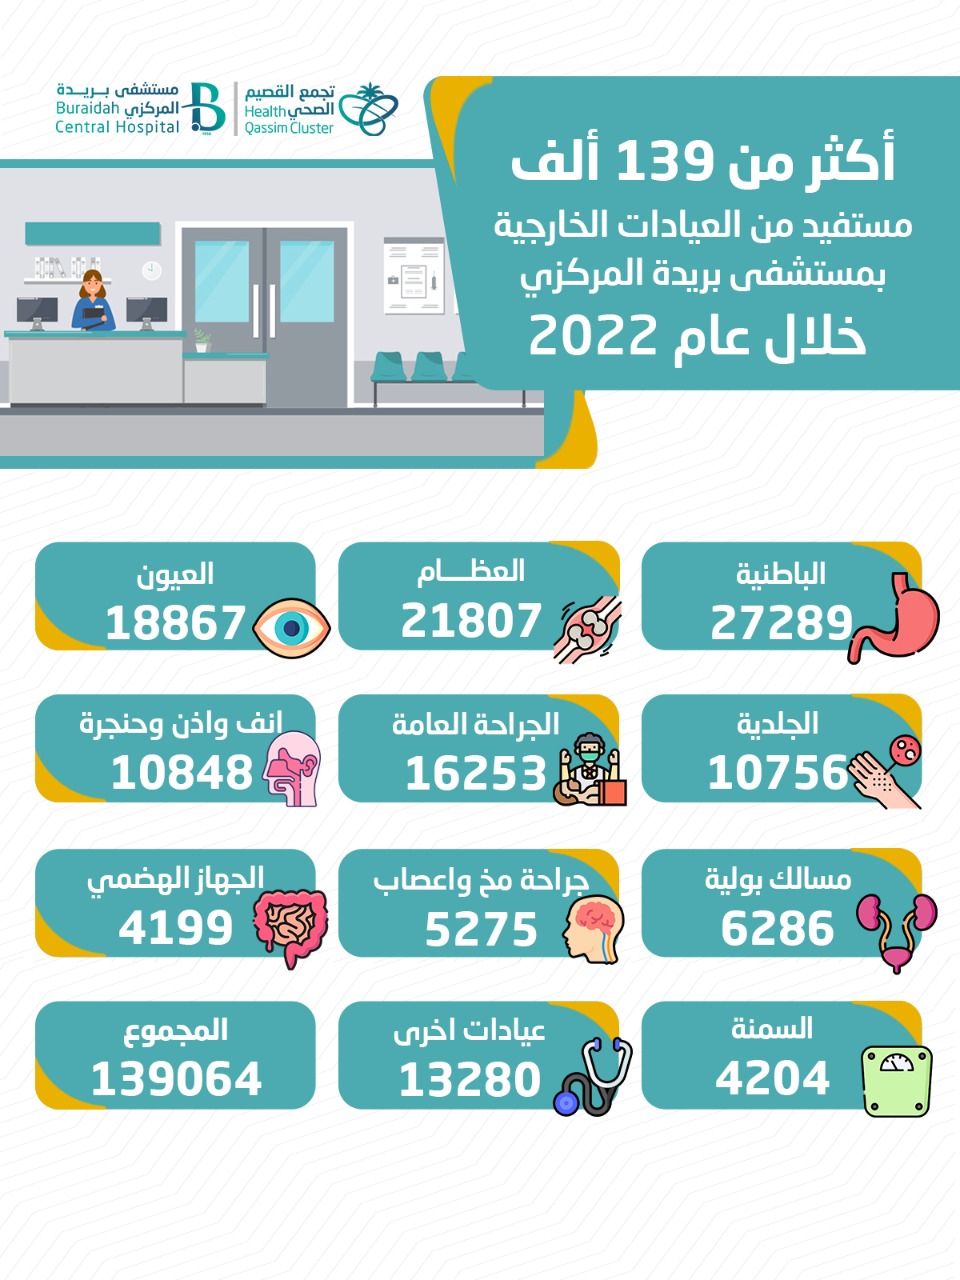 أكثر من 139 ألف مستفيد من العيادات الخارجية بمستشفى بريدة المركزي خلال عام 2022م